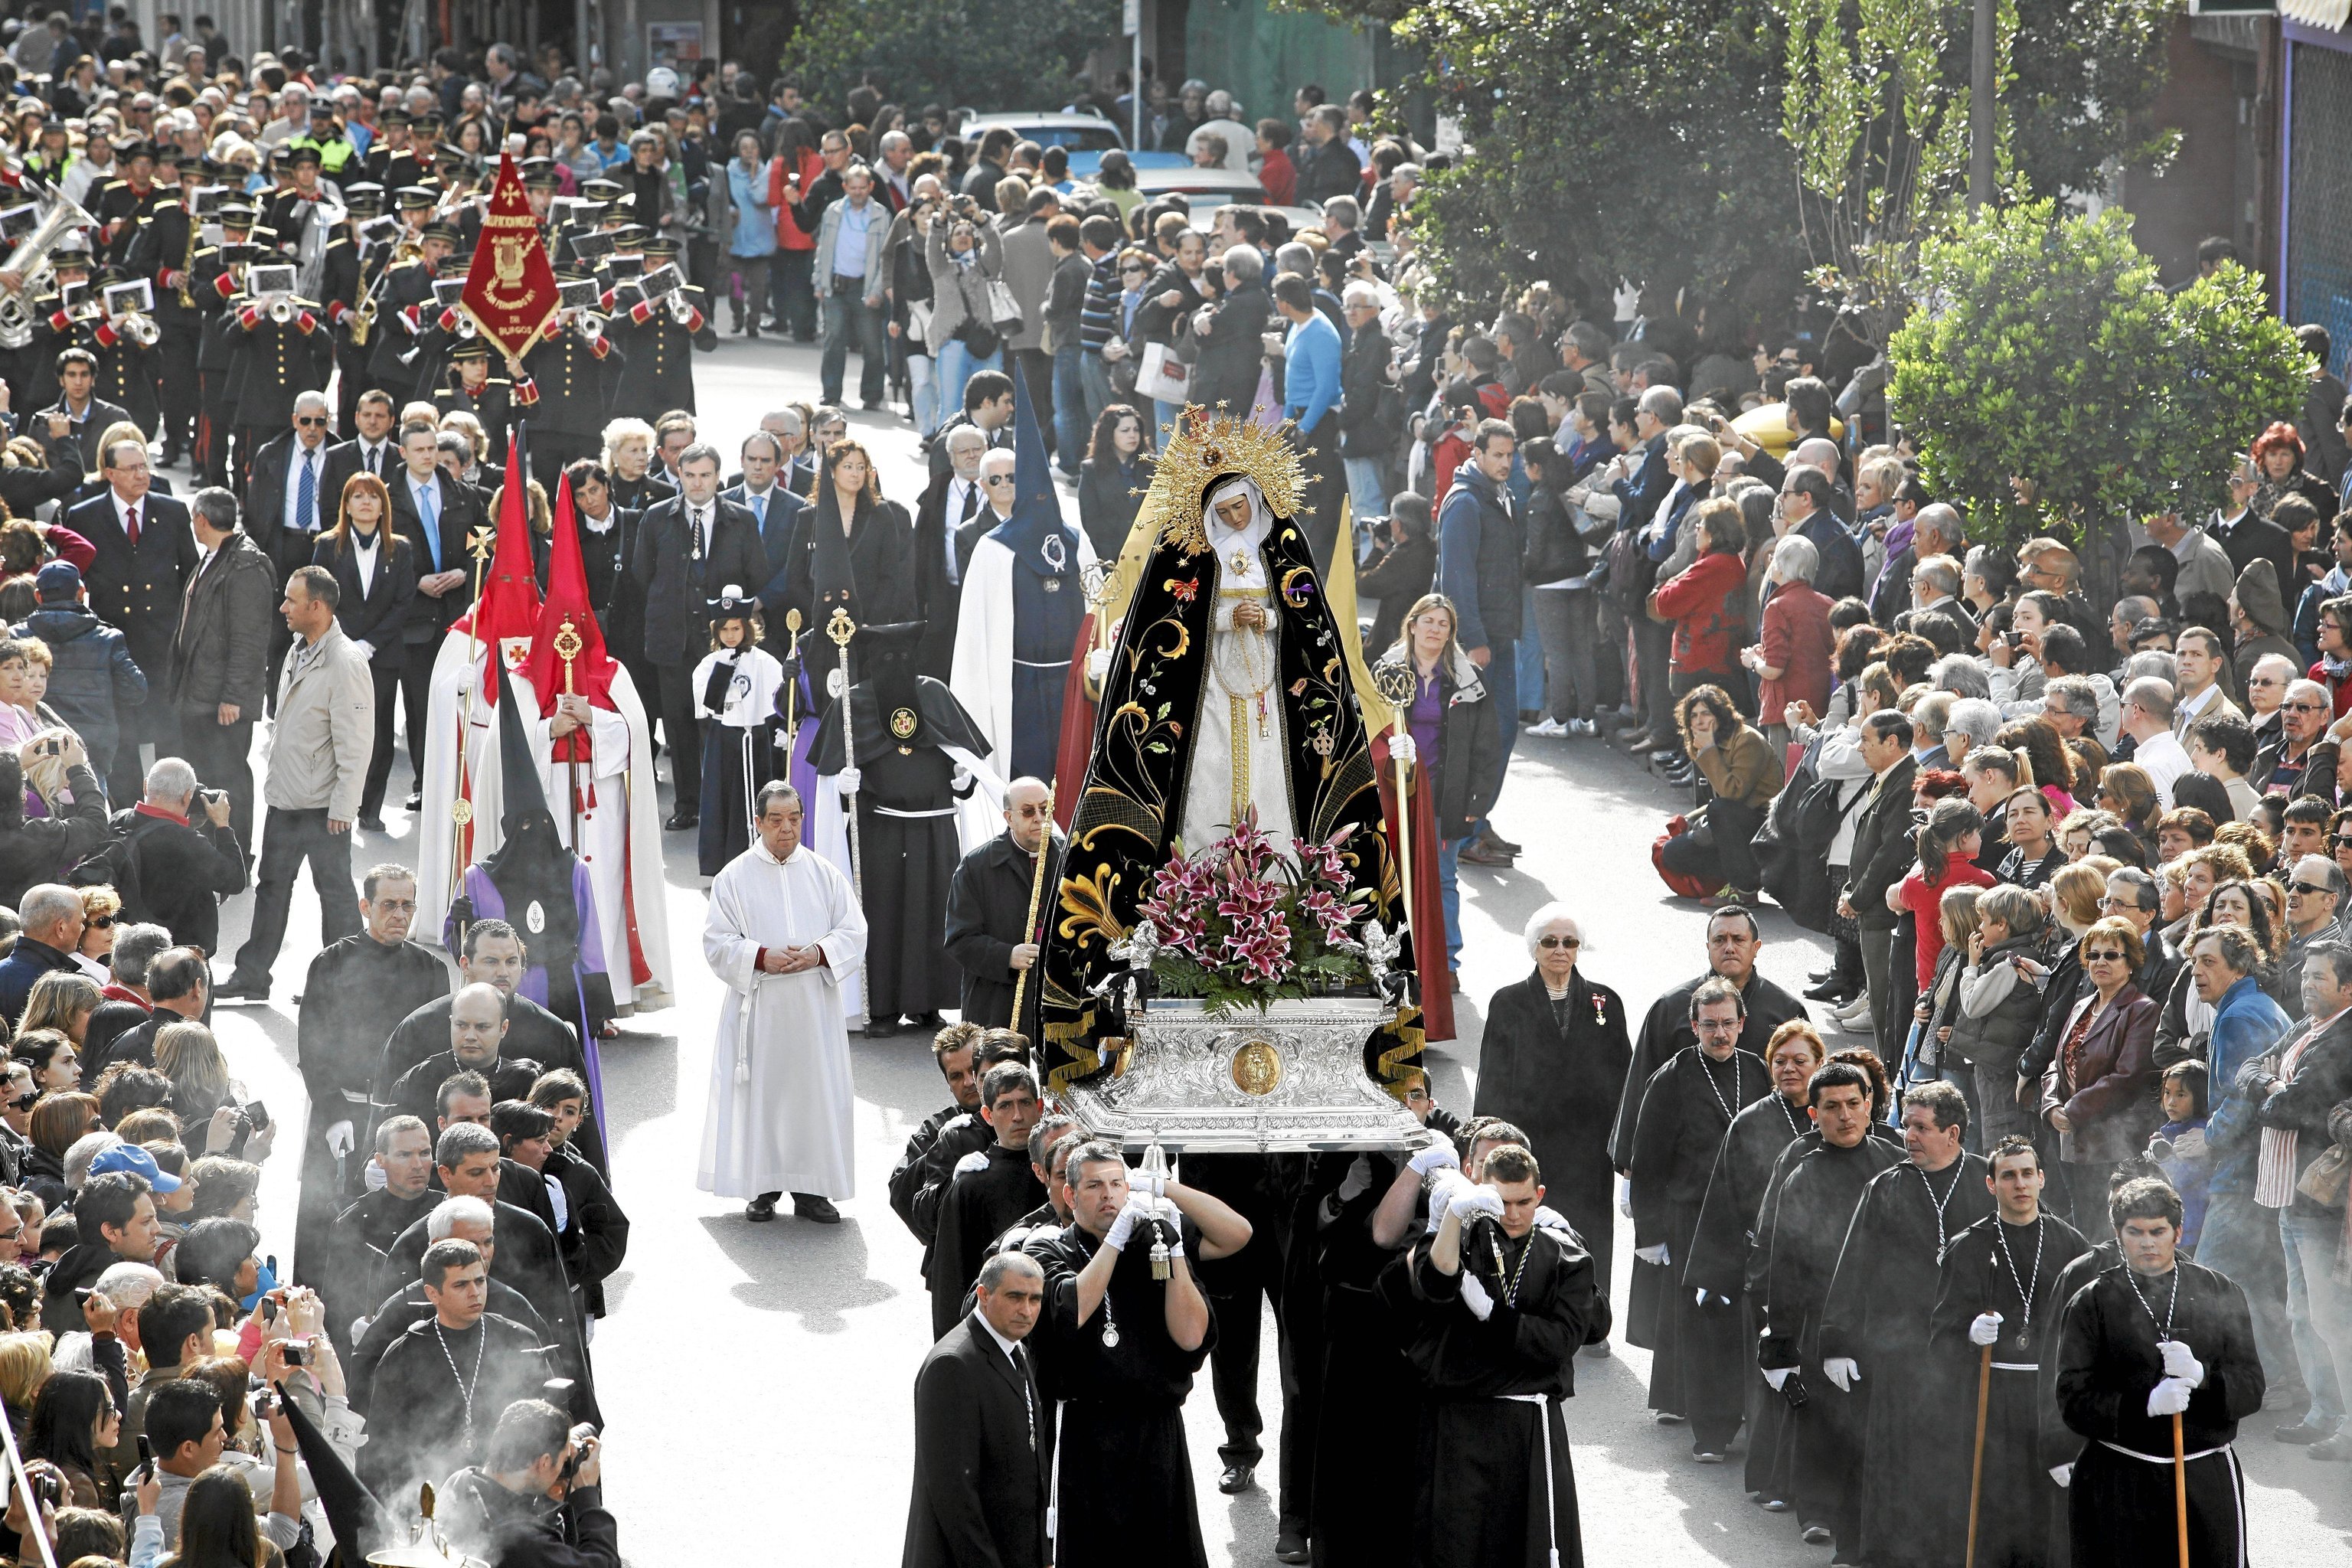 Momento de una procesión de Semana Santa en Madrid, con el paso de la Virgen y numeroso público asistente.